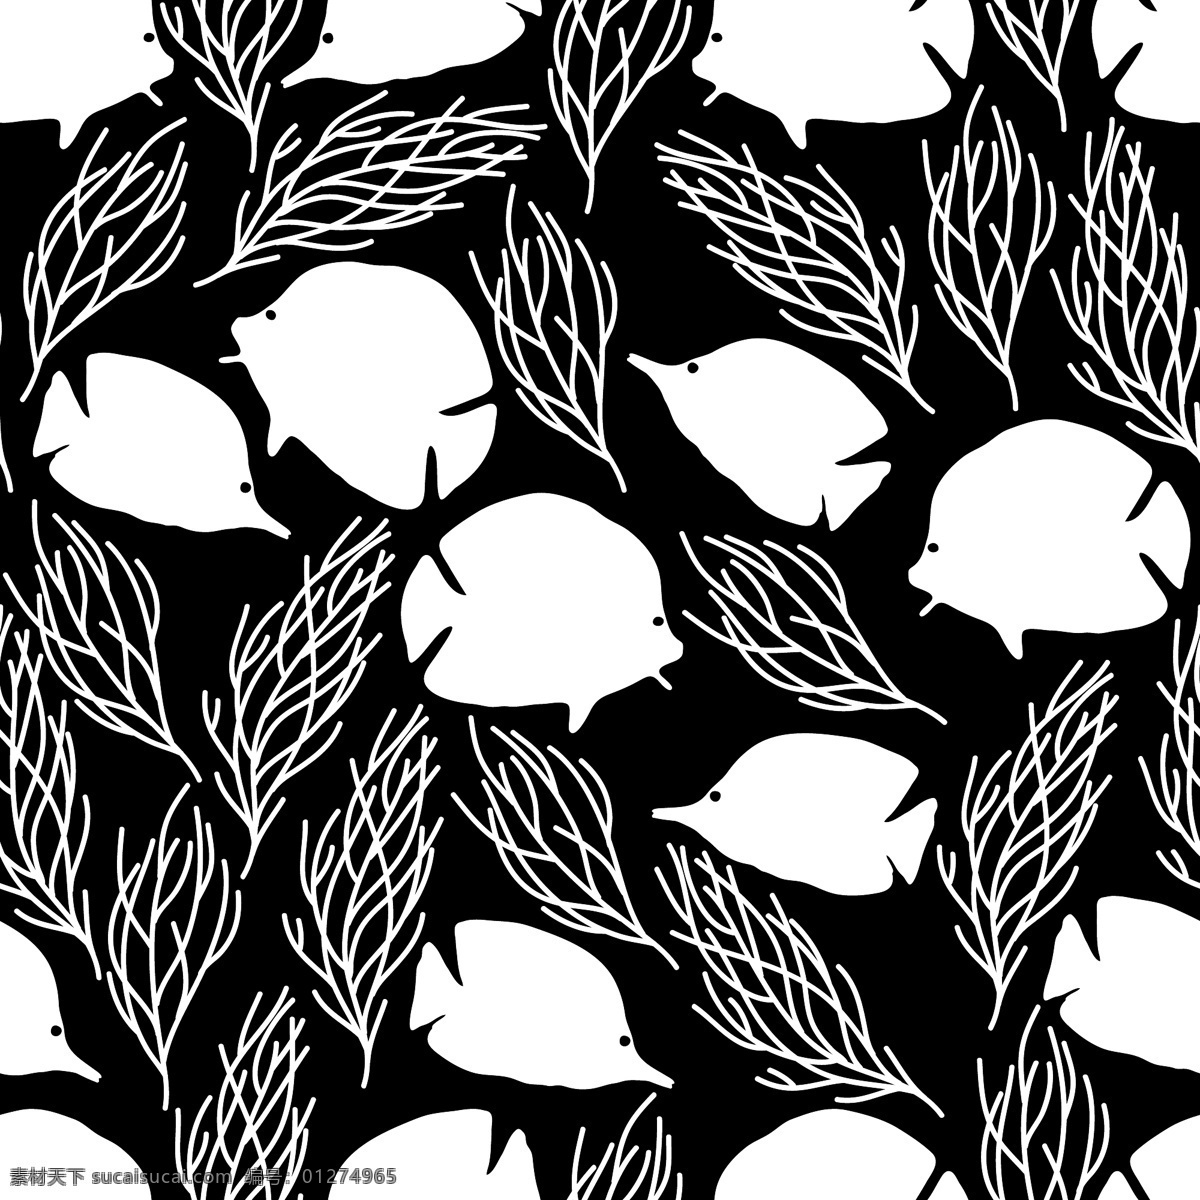 海底 小鱼 水彩 diy 纹理 图案 简约 黑色 条纹 卡通 花纹 海草 矢量 设计素材 平面素材